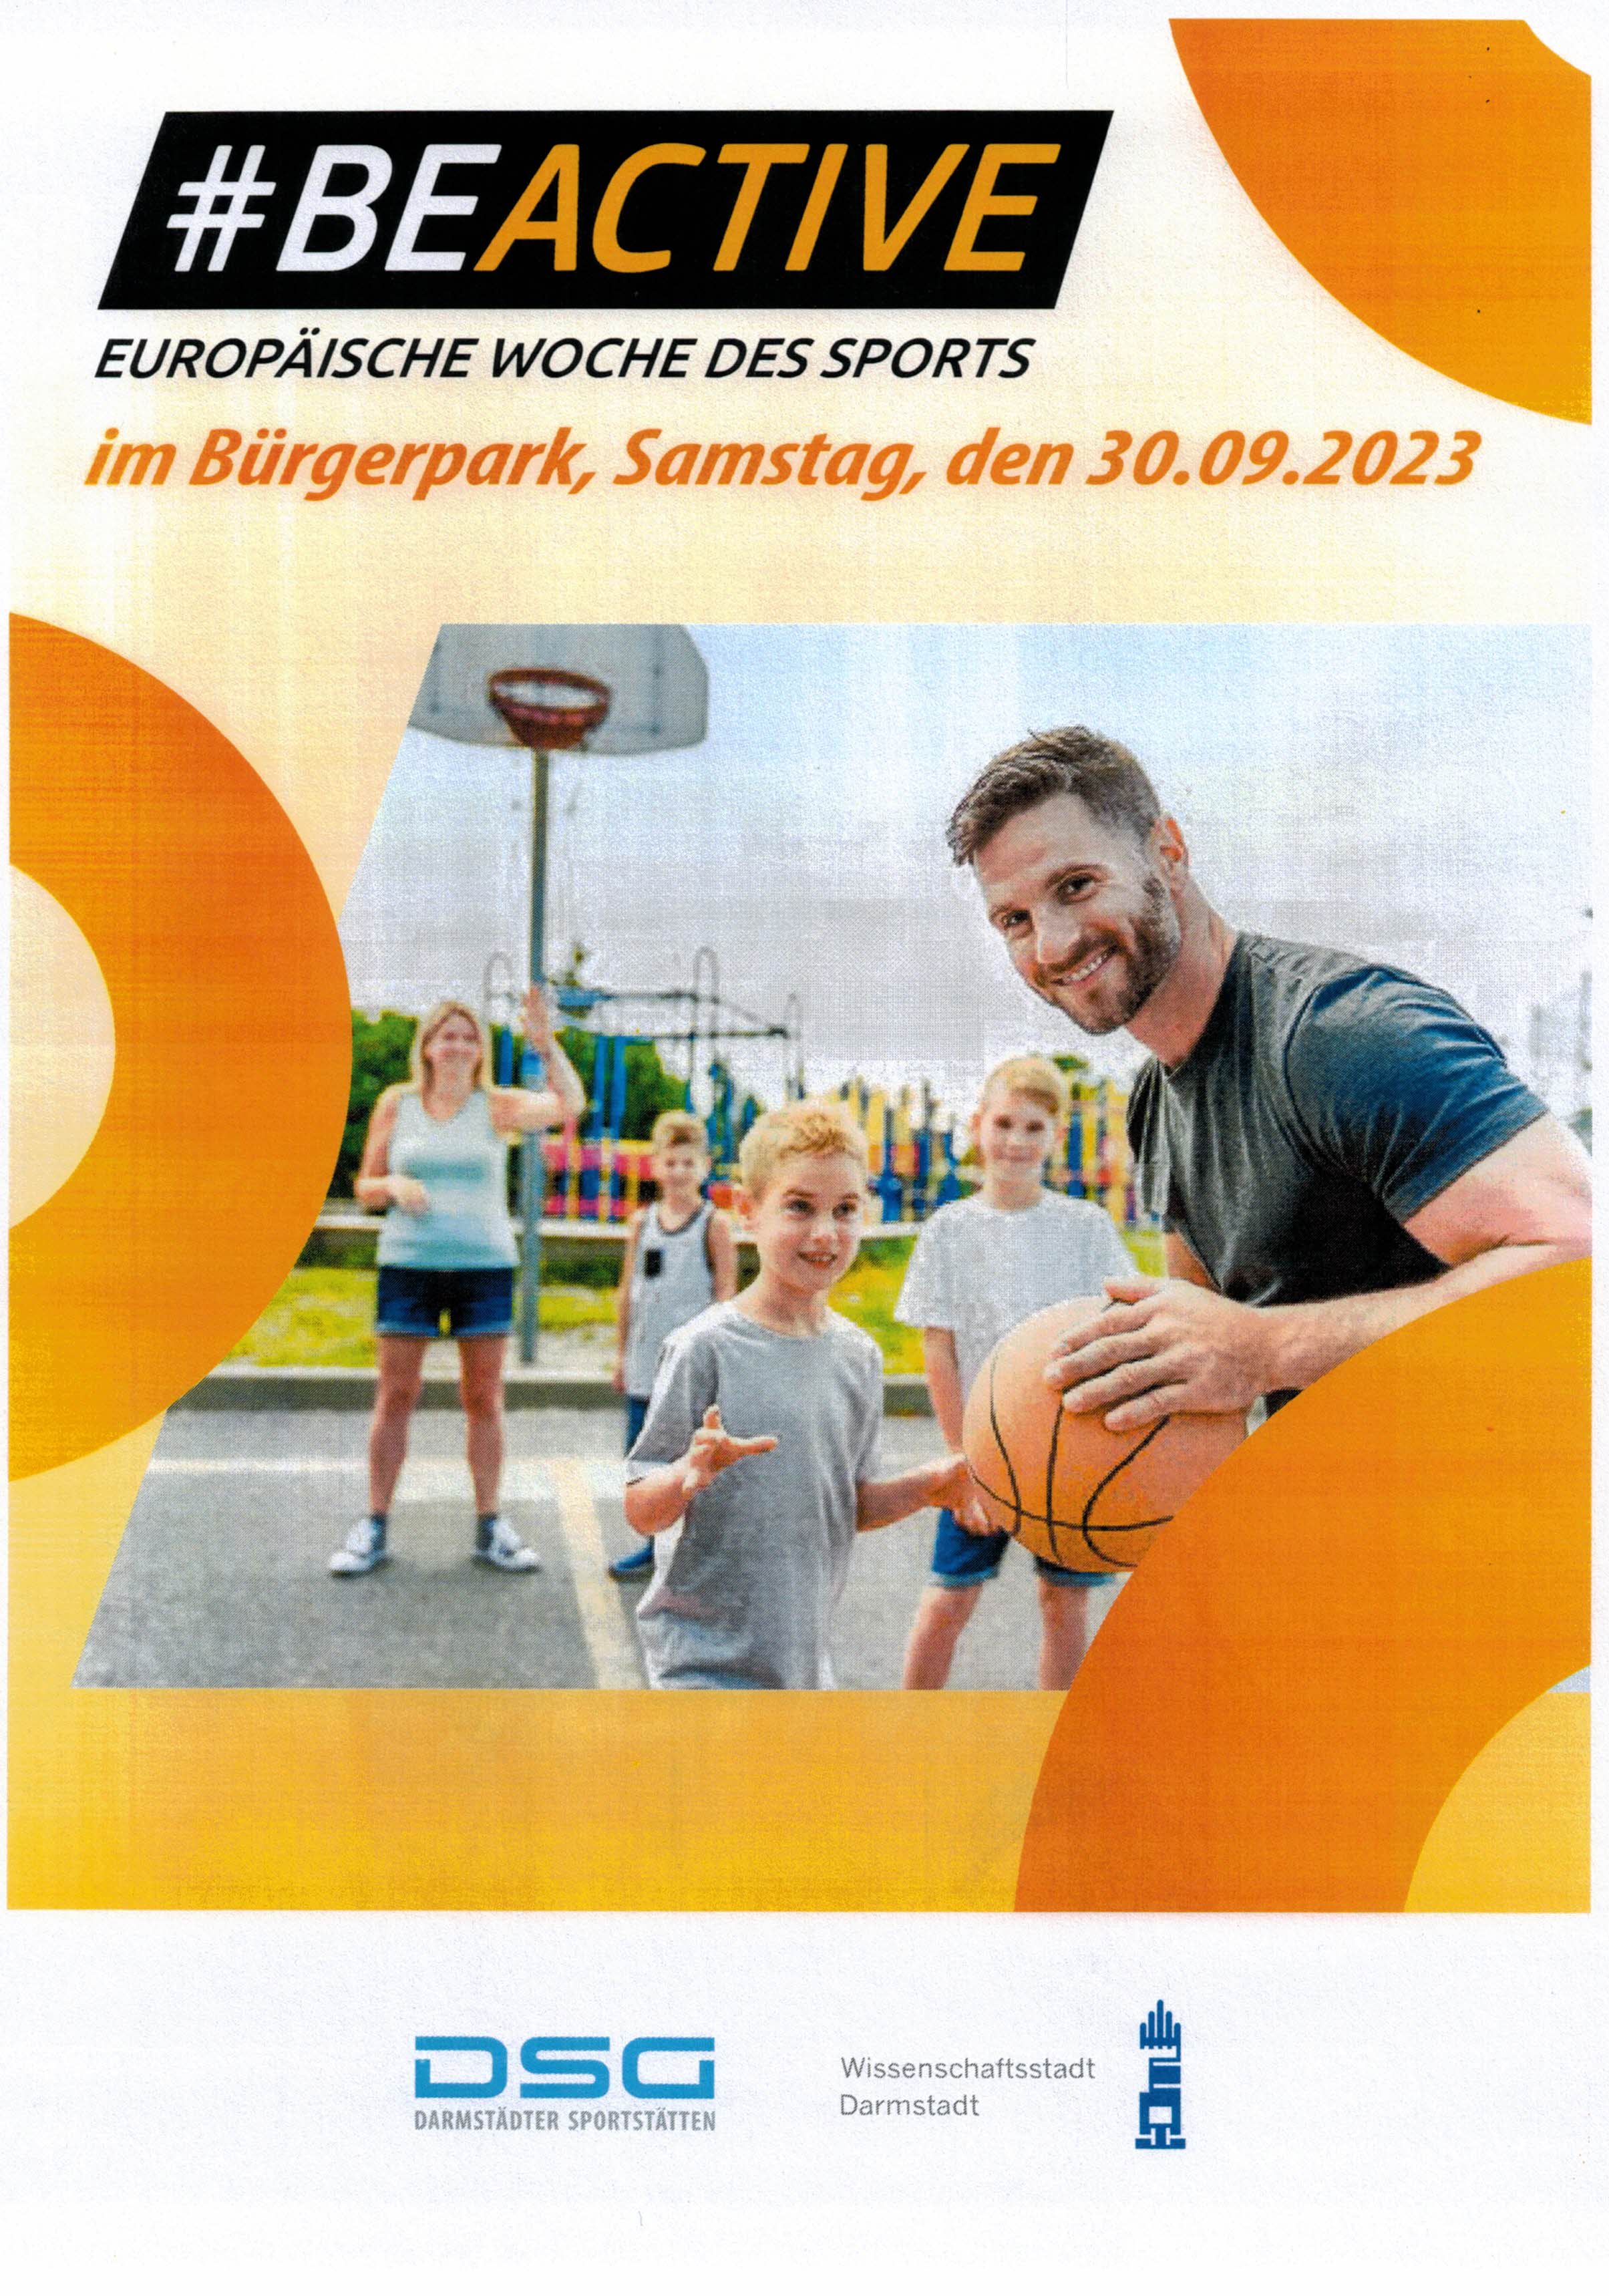 #BEACTIVE Europäische Woche des Sports im Bürgerpark, Samstag, den 30.09.2023.